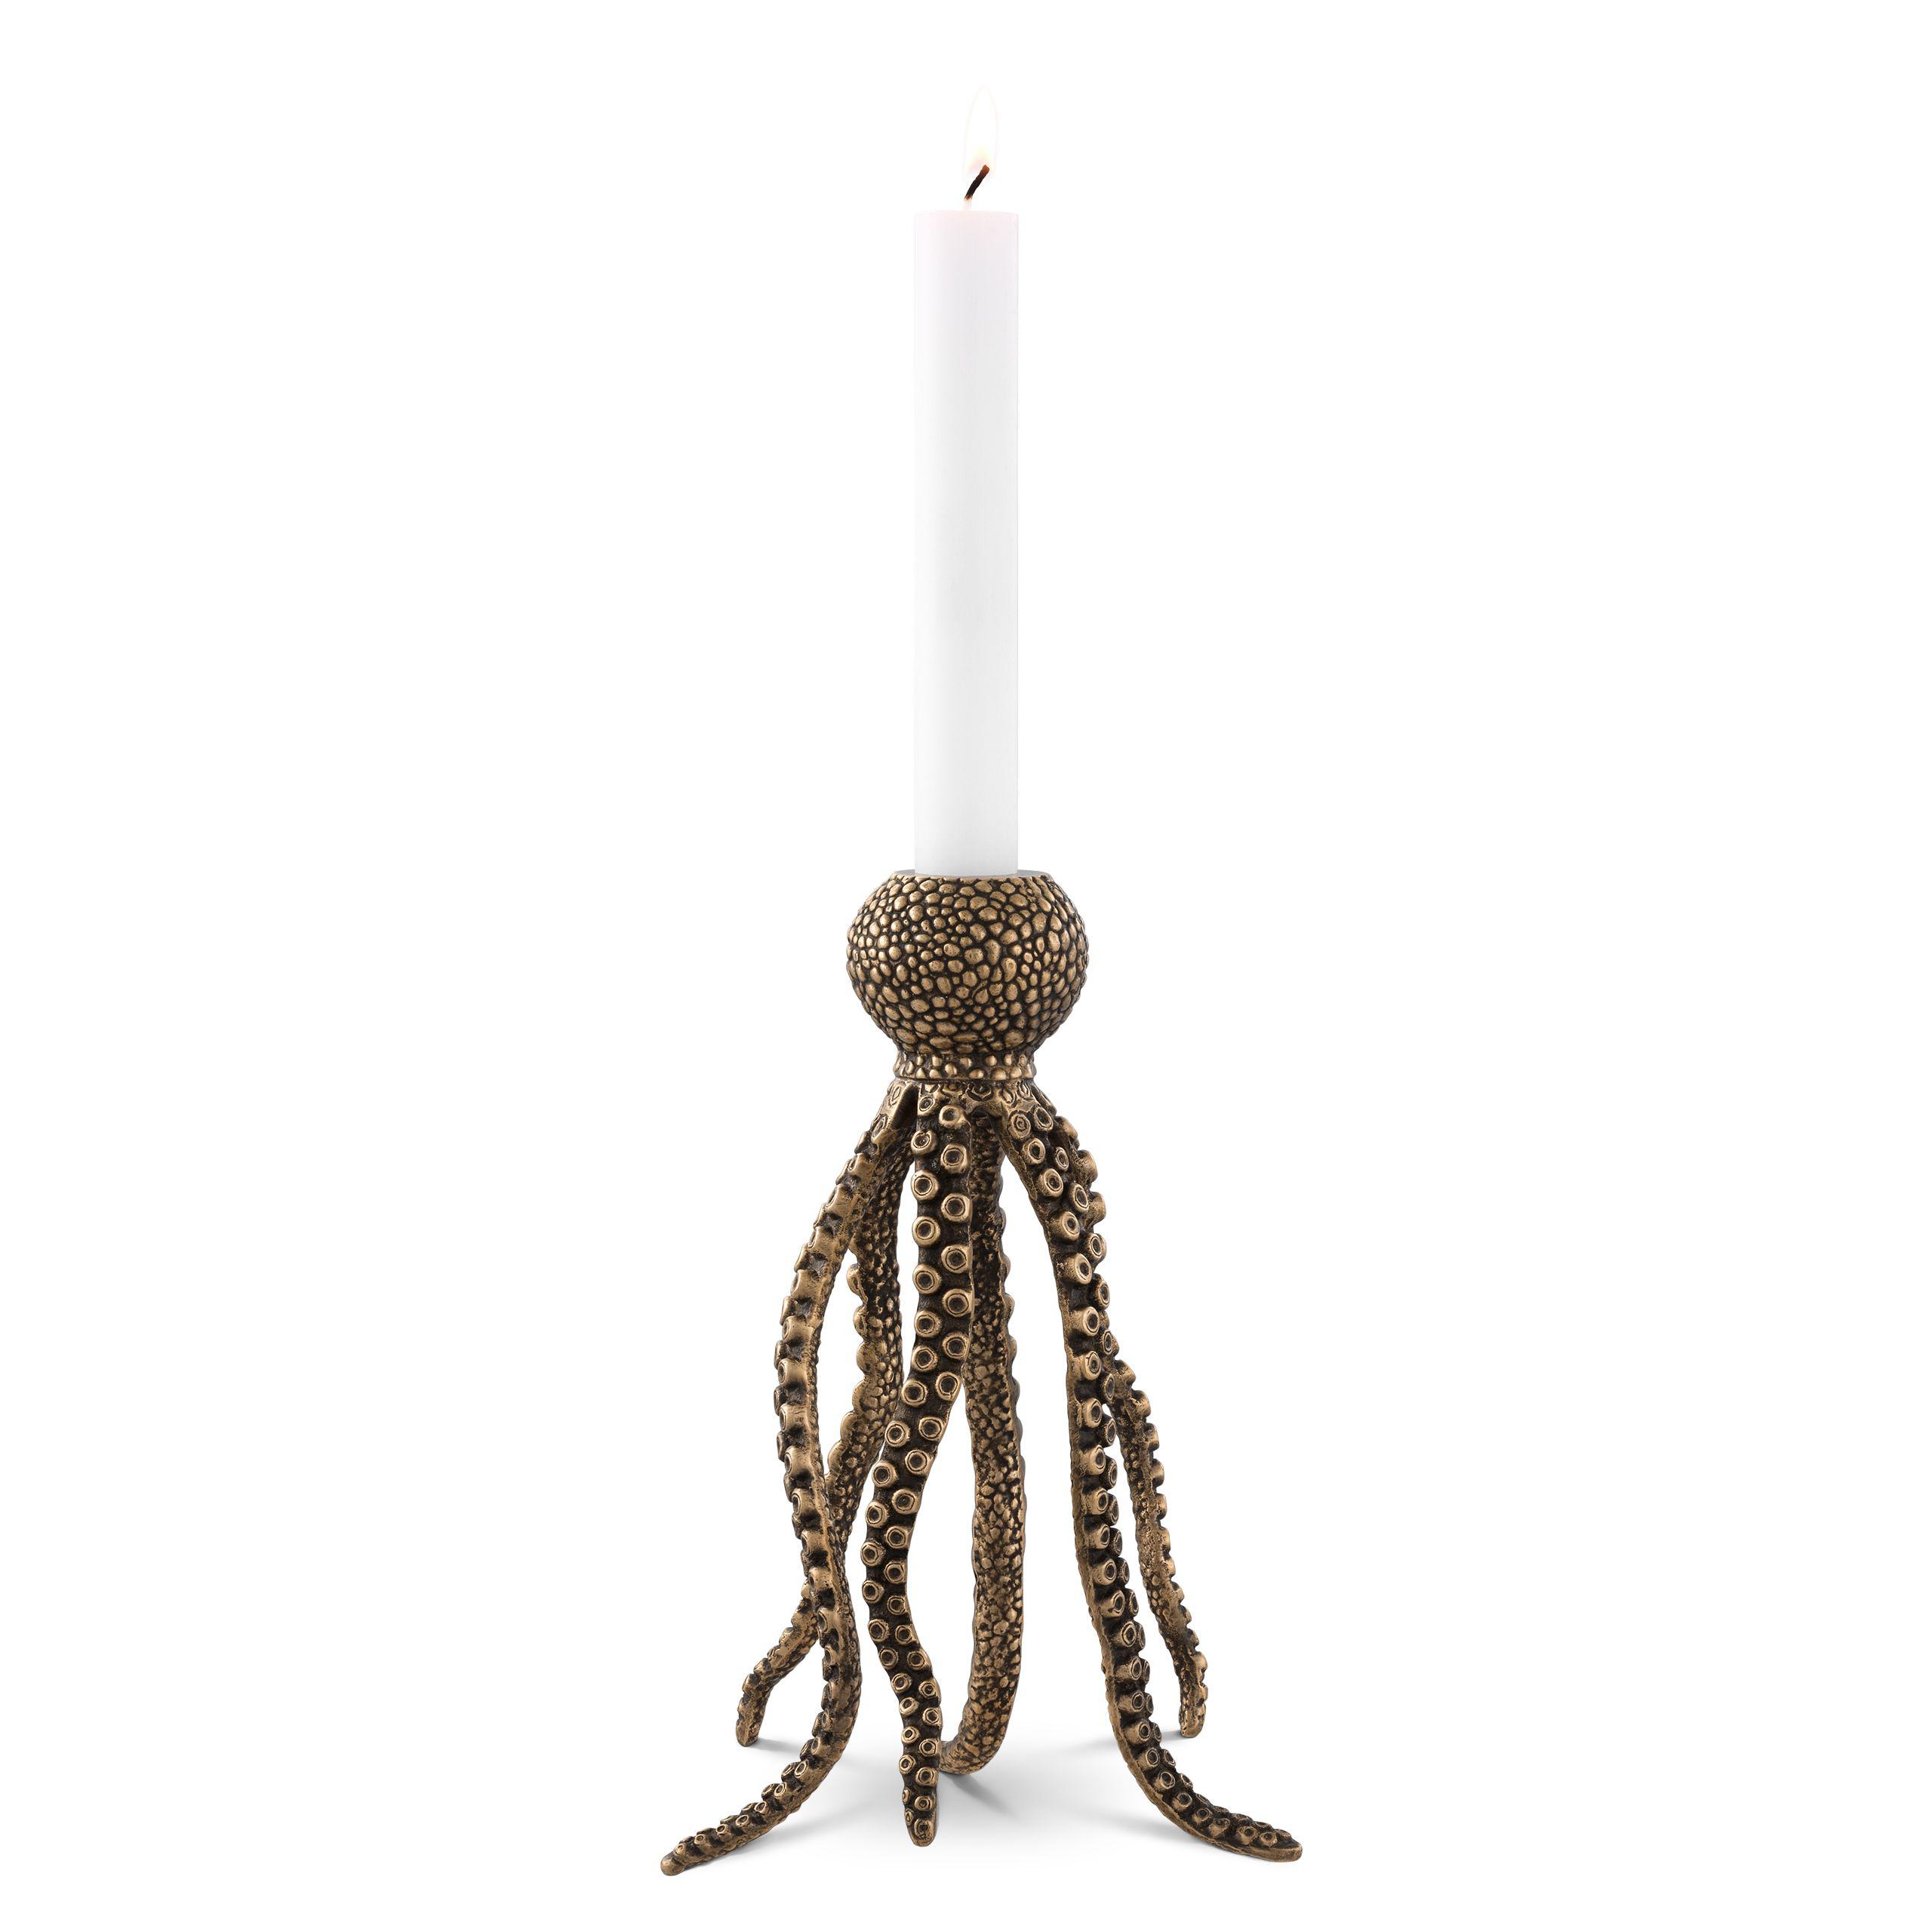 Купить Подсвечник Candle Holder Octopus в интернет-магазине roooms.ru